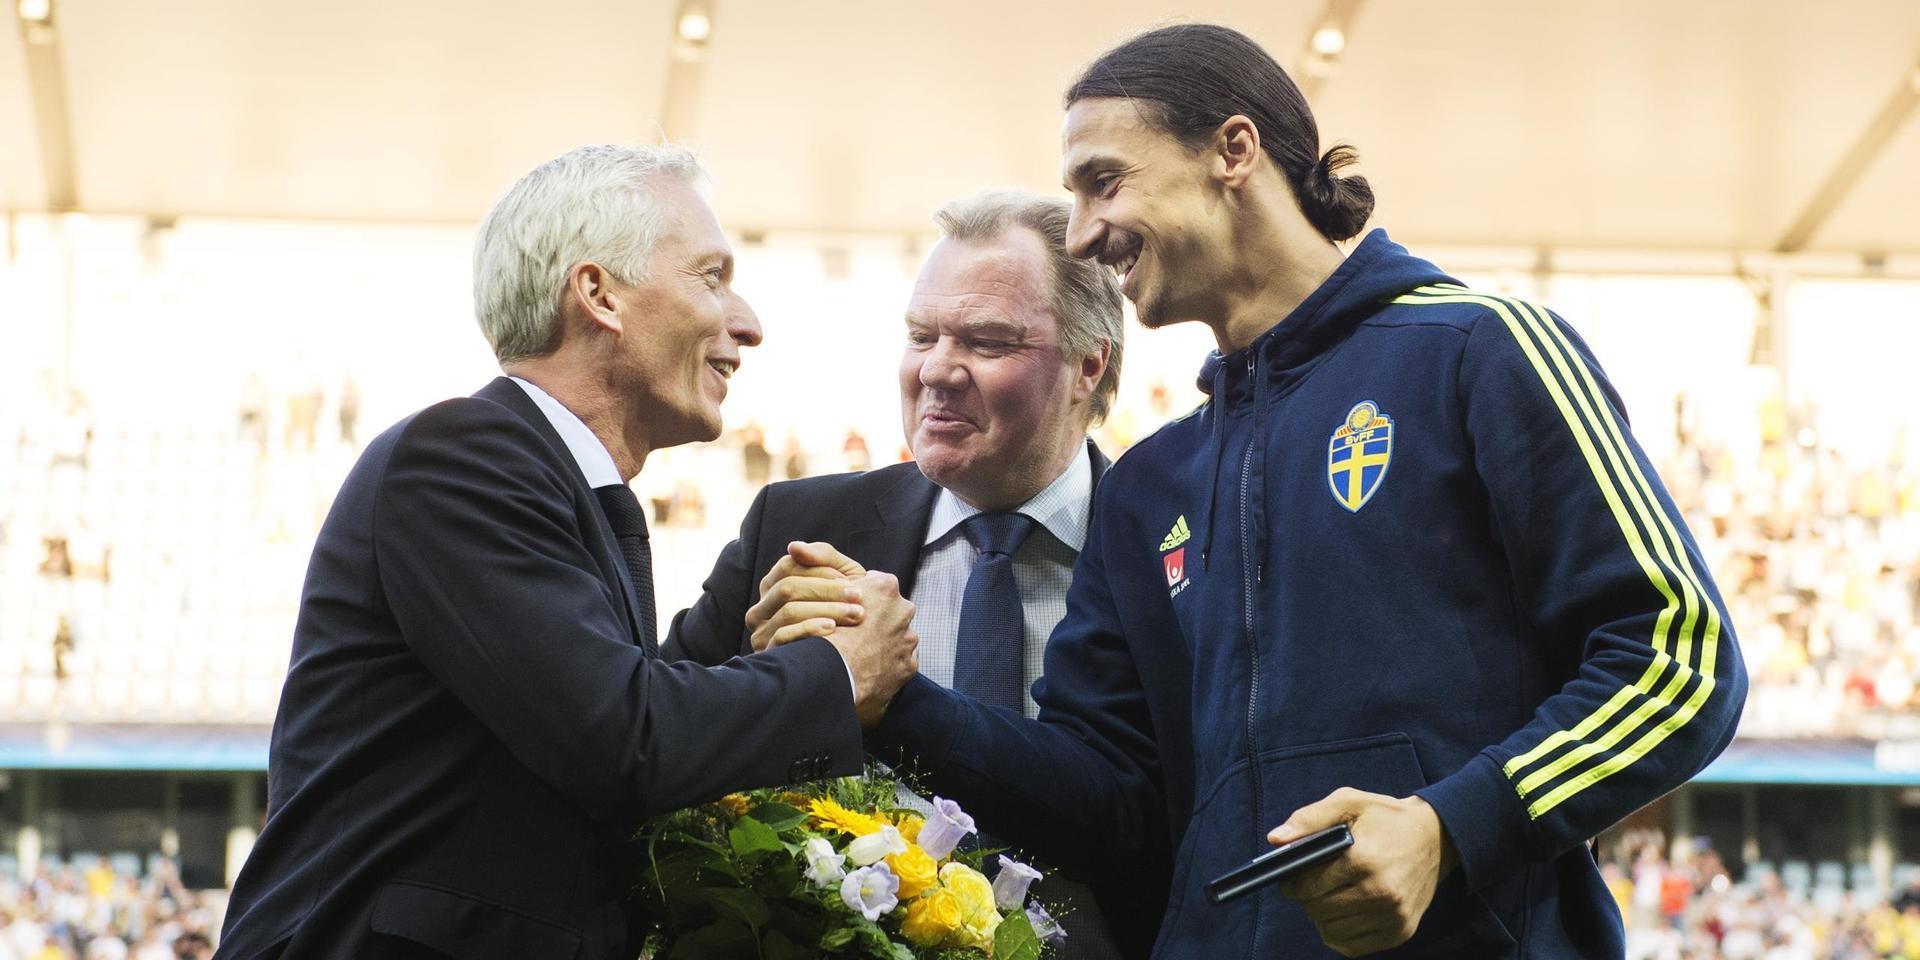 Svenska Fotbollförbundets generalsekreterare Håkan Sjöstrand och ordförande Karl-Erik Nilsson med Zlatan Ibrahimovic.